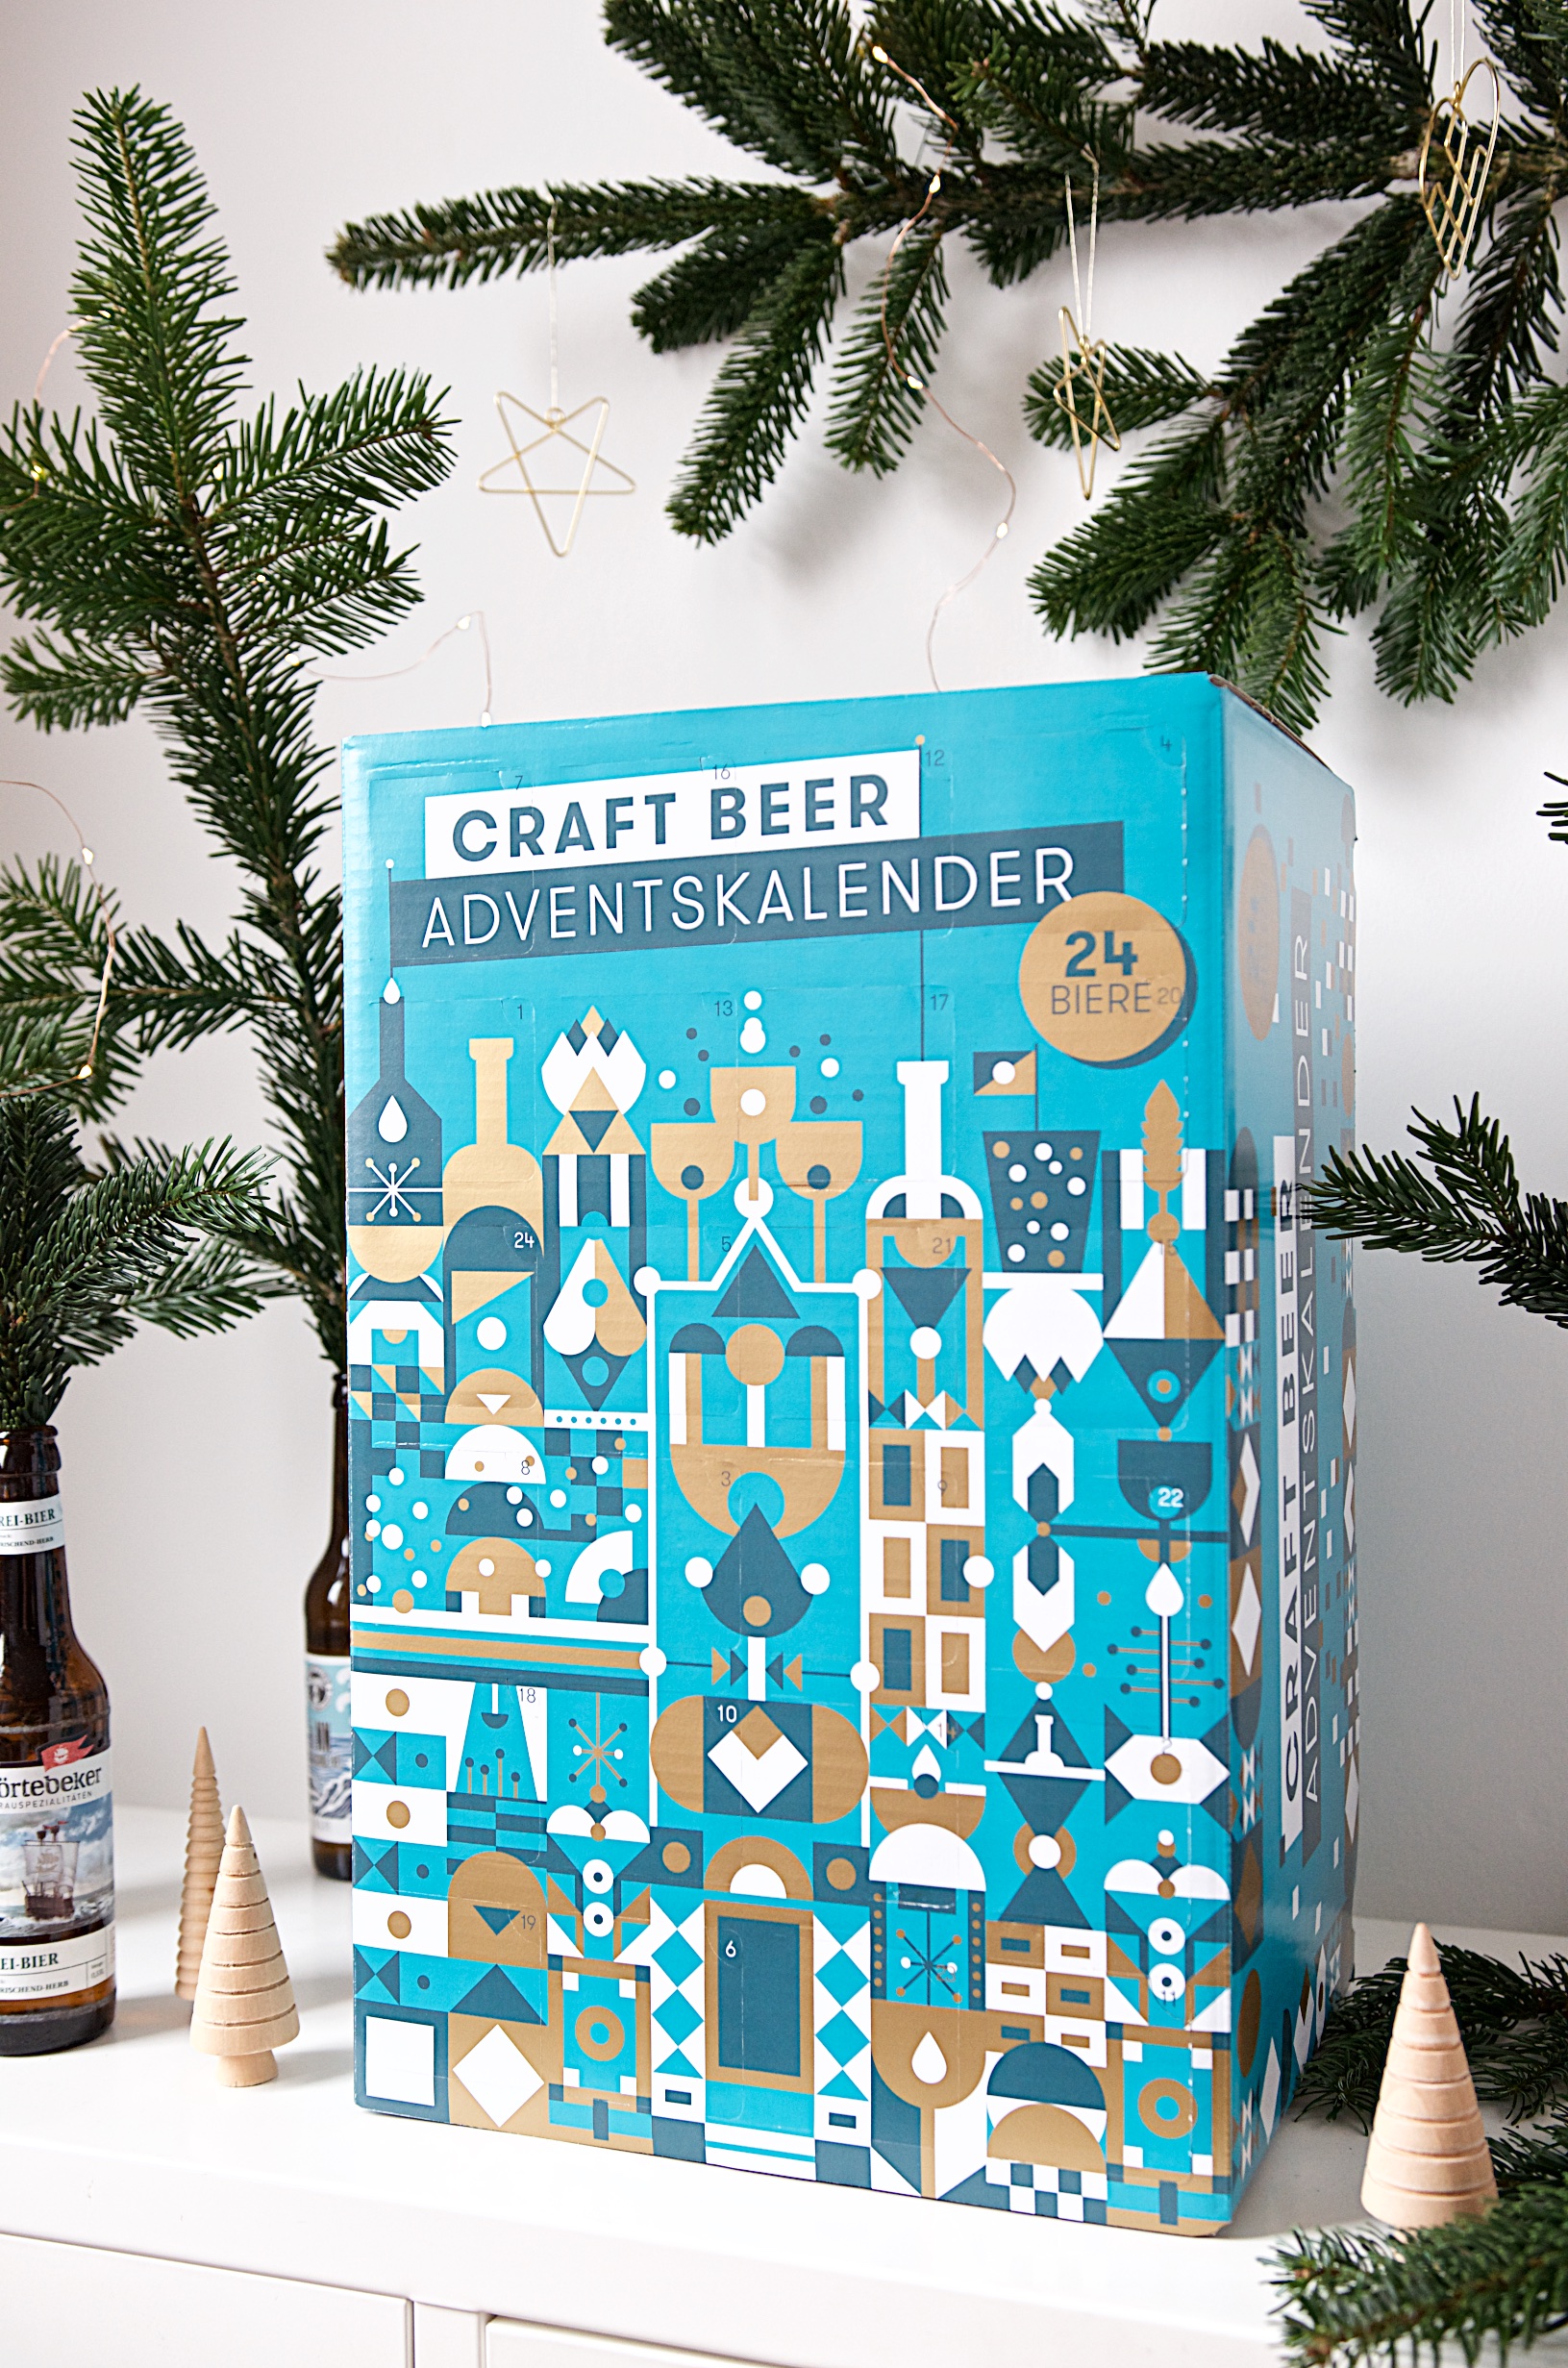 Craft Beer Adventskalender von Beyond Beer | Adventskalender für Männer und Bierliebhaber (2)